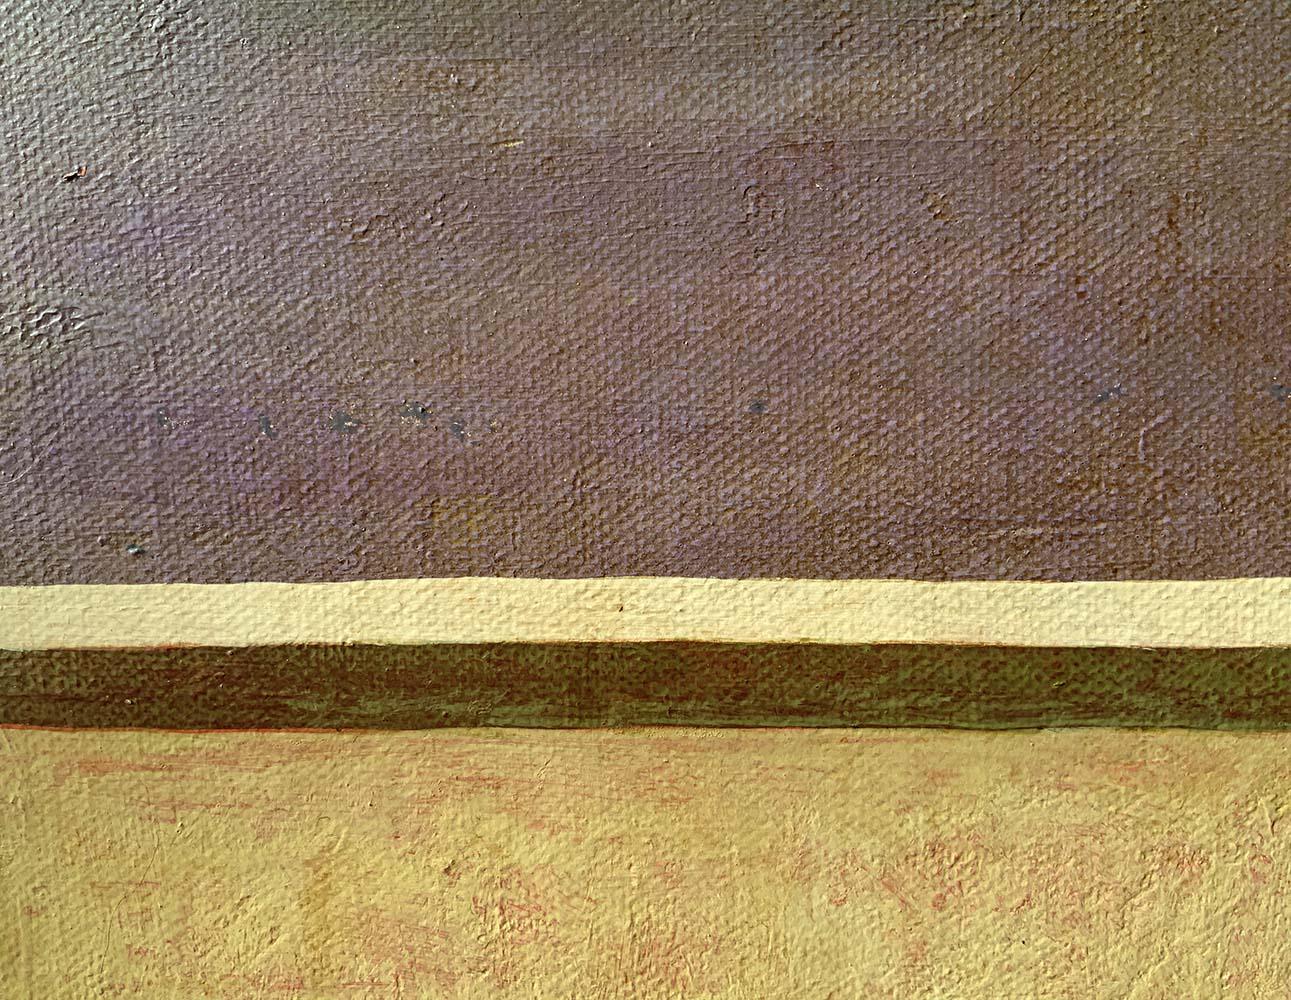 AVUI A LES 8 by Ramon Enrich, Geometric Landscape Painting, purple / earth tones 3